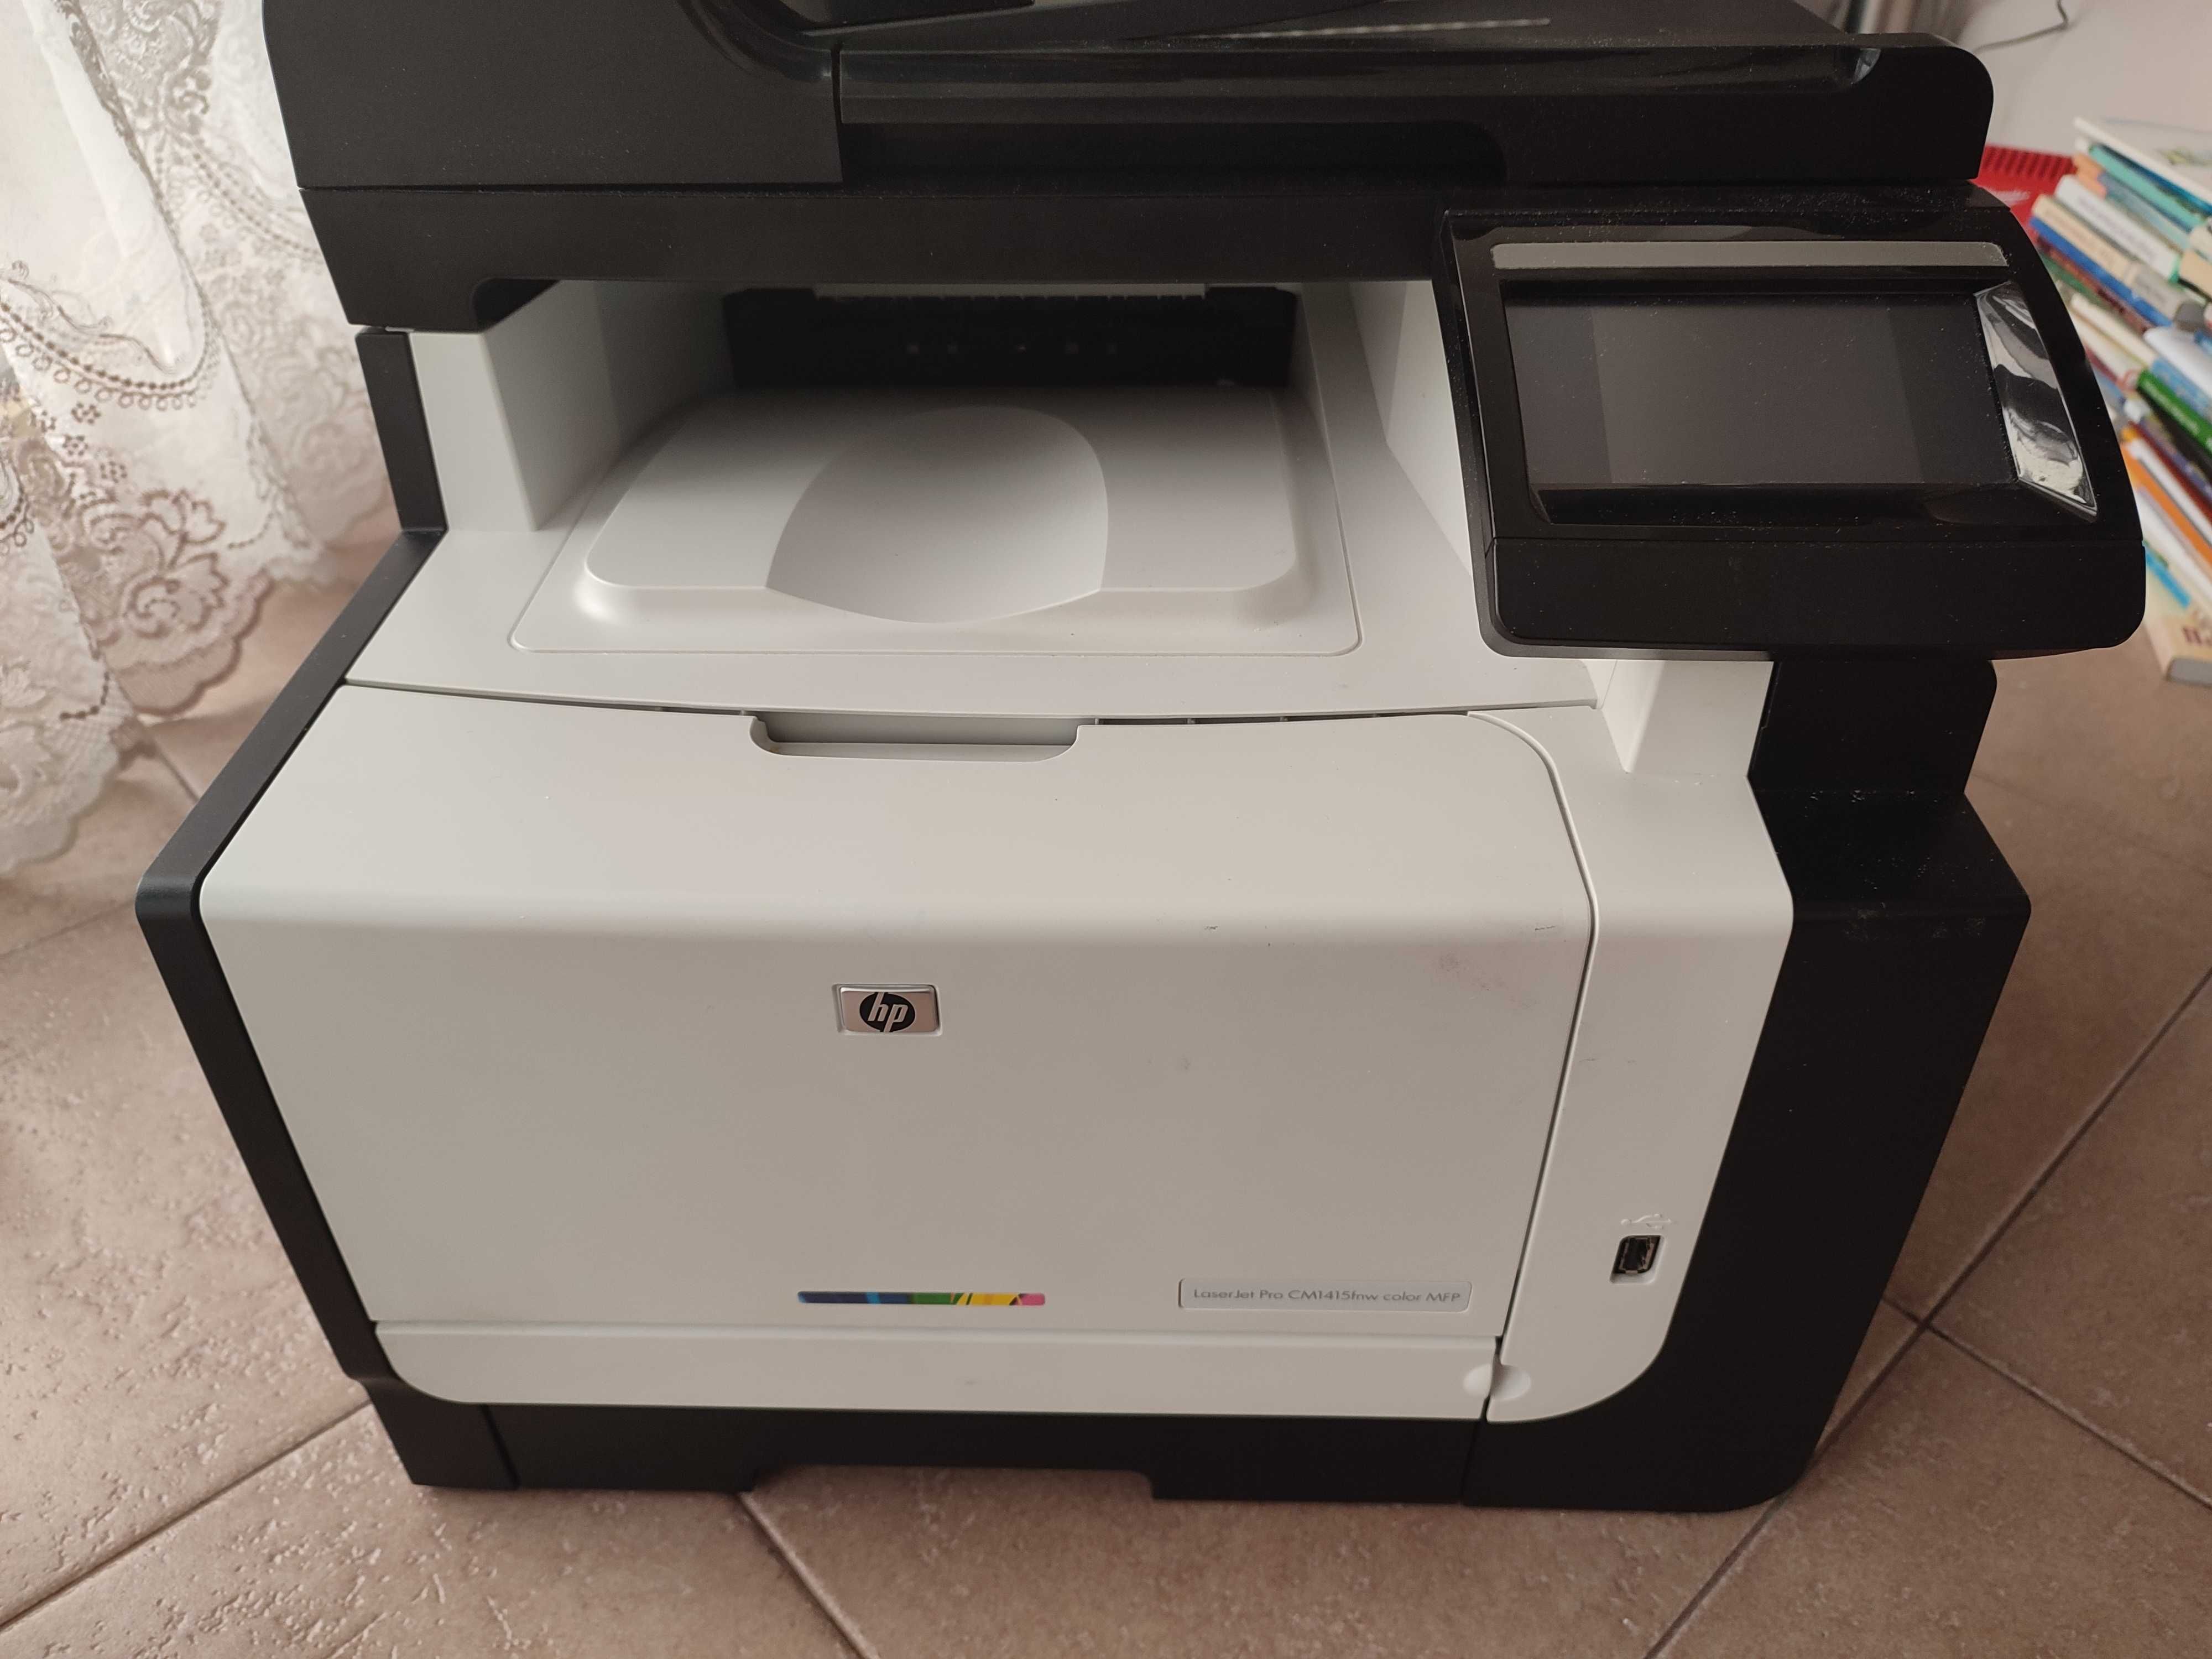 HP Color LaserJet Pro cm1415fnw